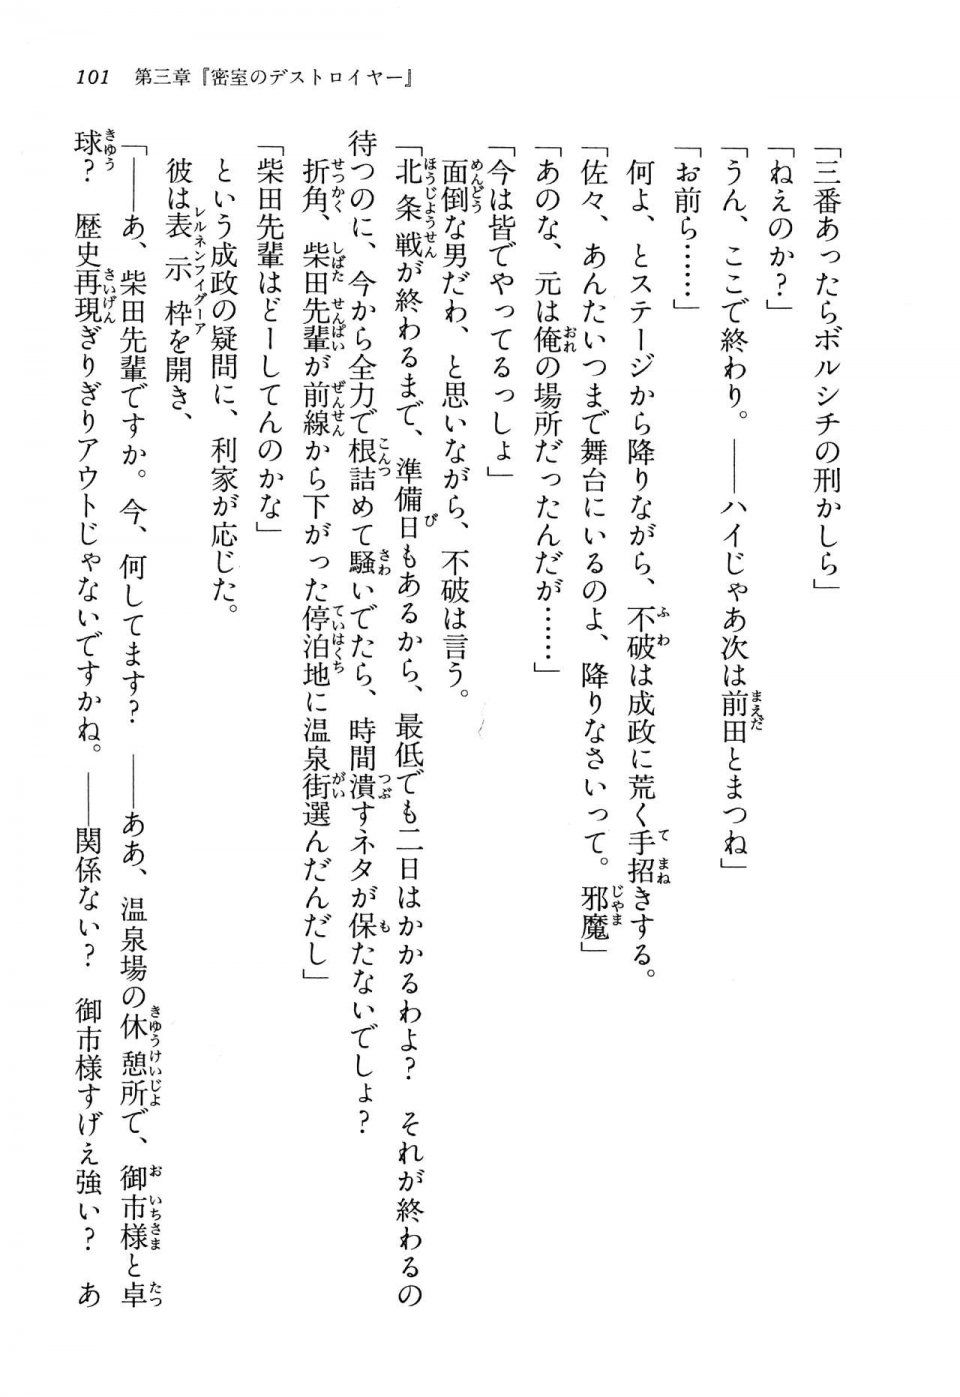 Kyoukai Senjou no Horizon LN Vol 13(6A) - Photo #101